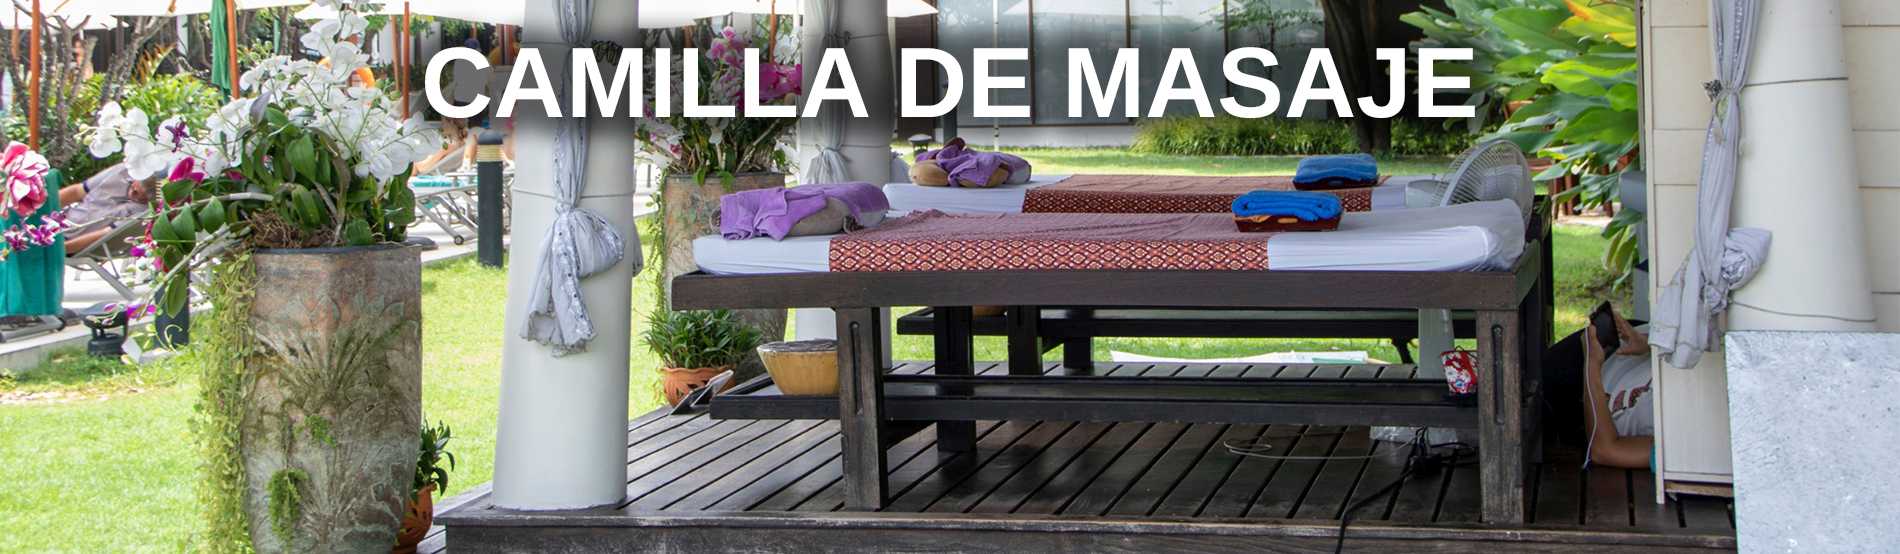 Camilla de masaje mesa de cama para el masaje tailandes